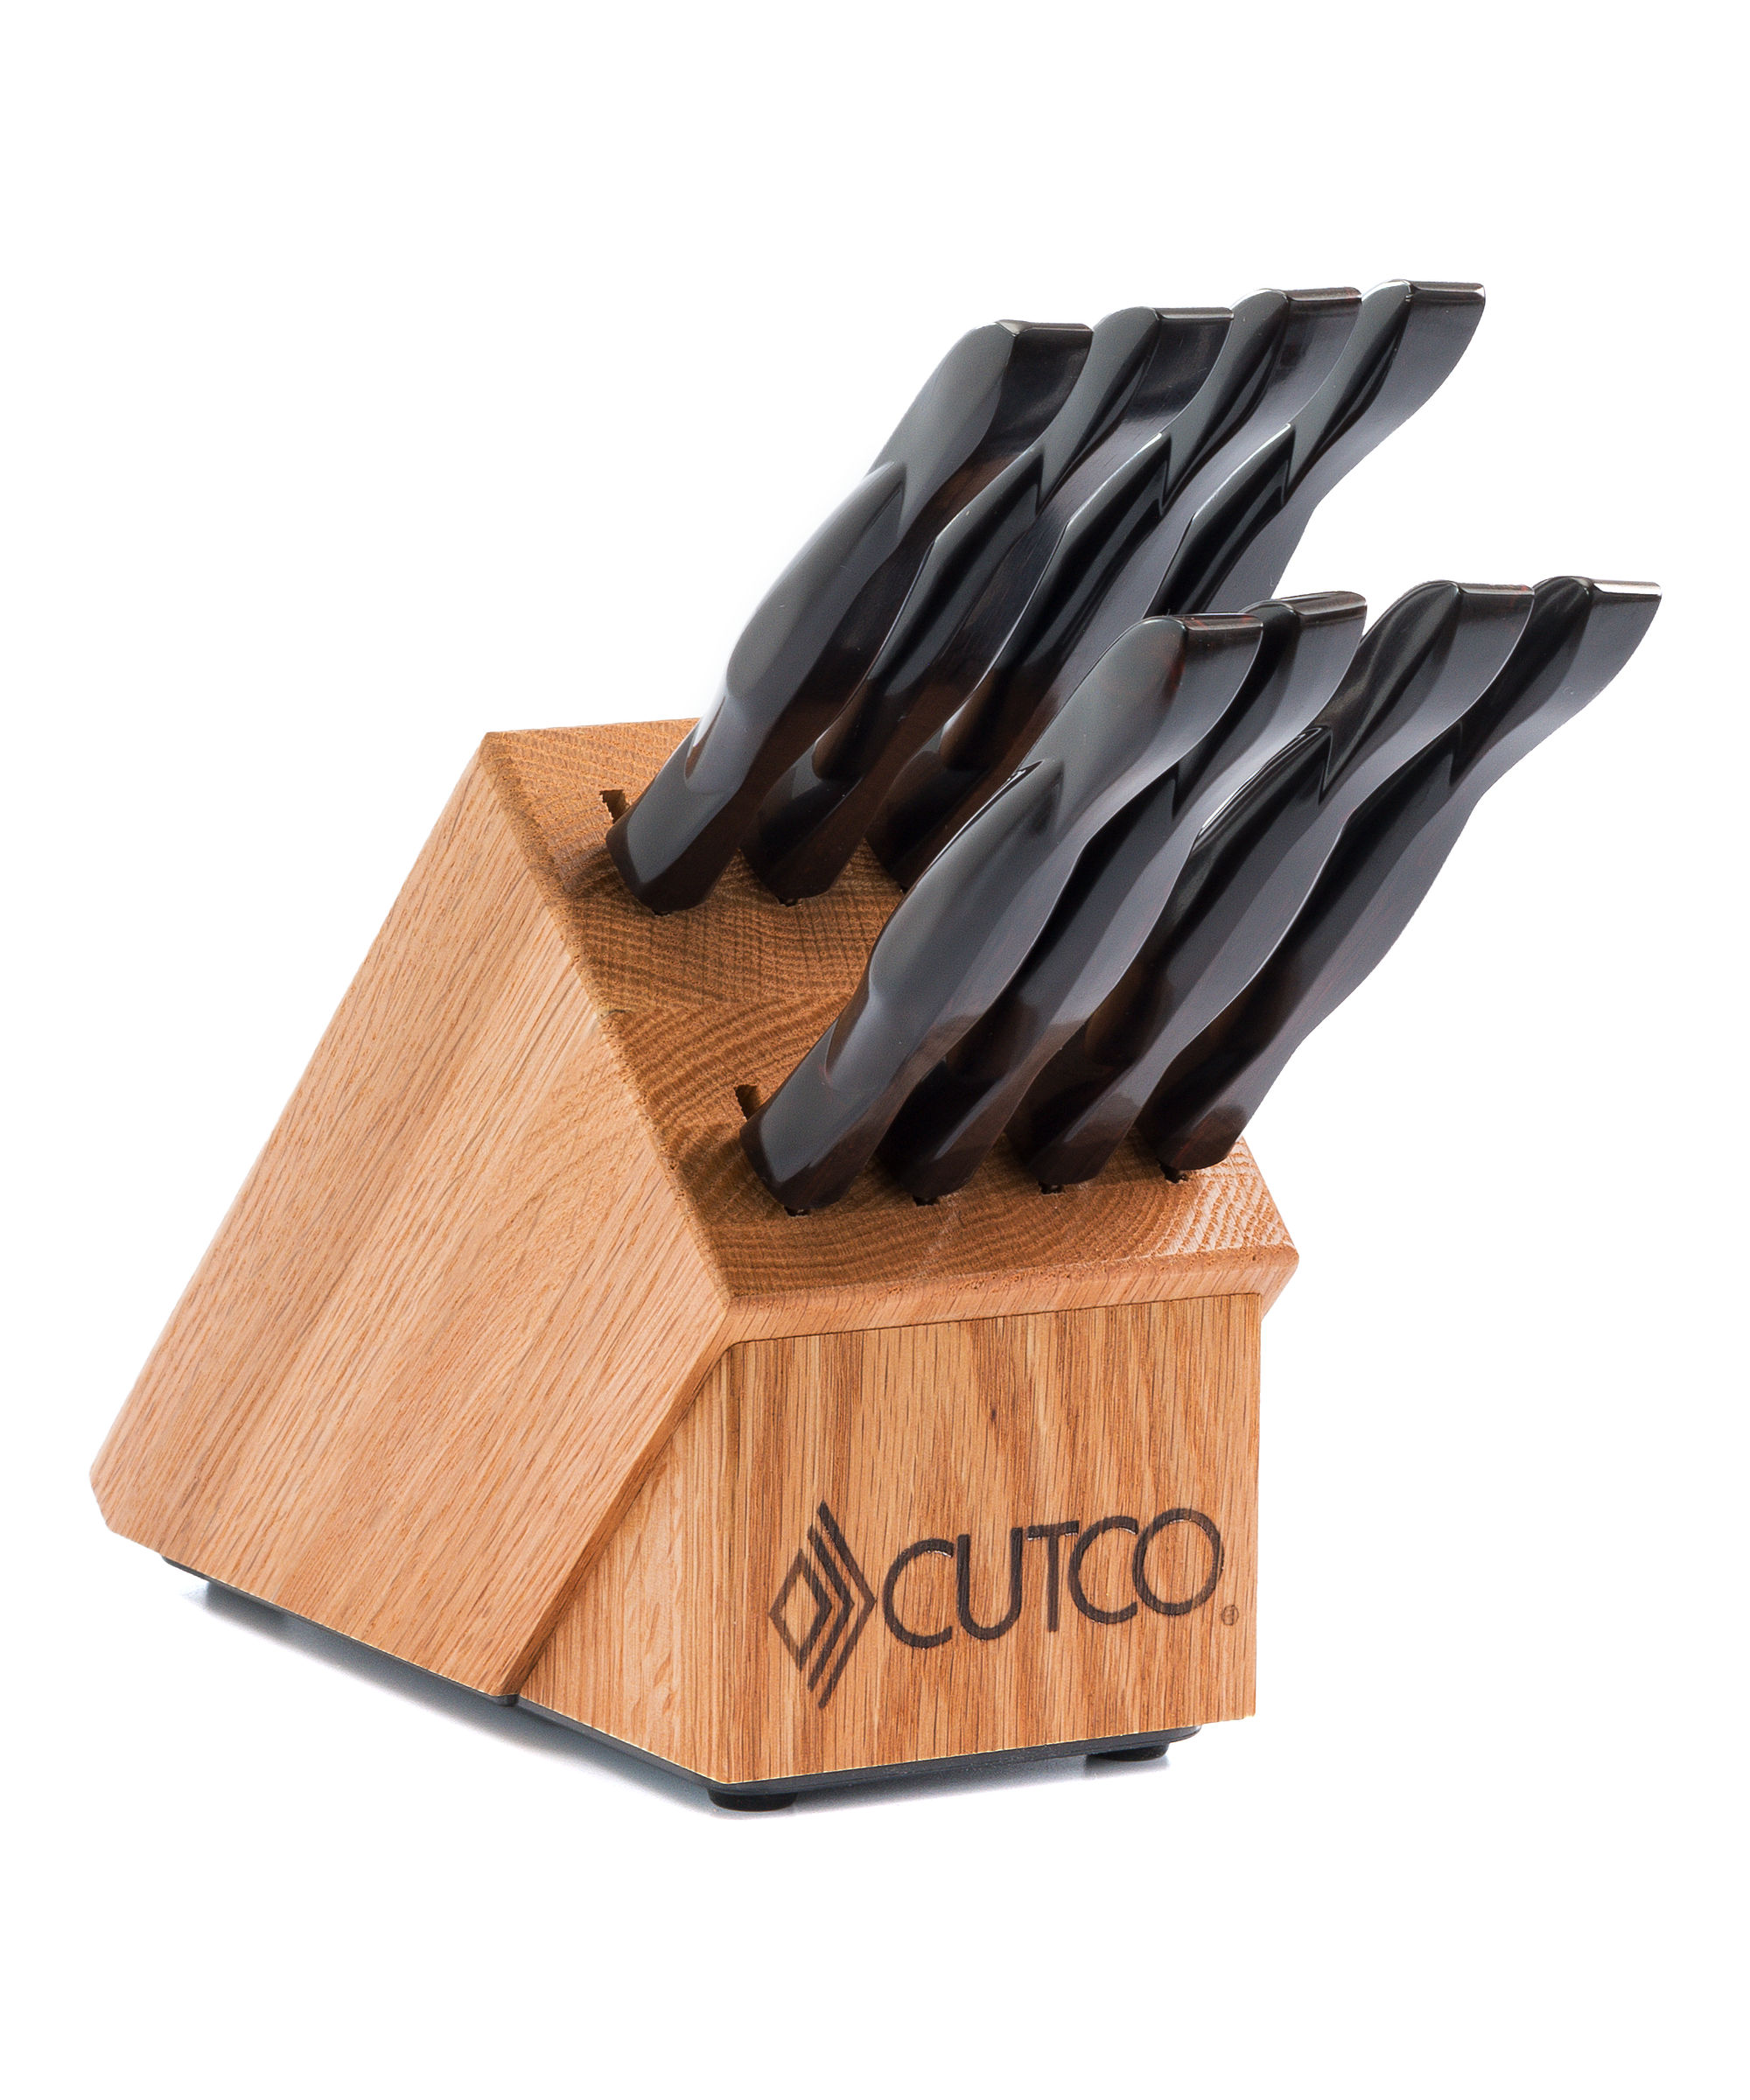 Set of Cutco Steak Knives, 8 Knives and Box, No. 1058 